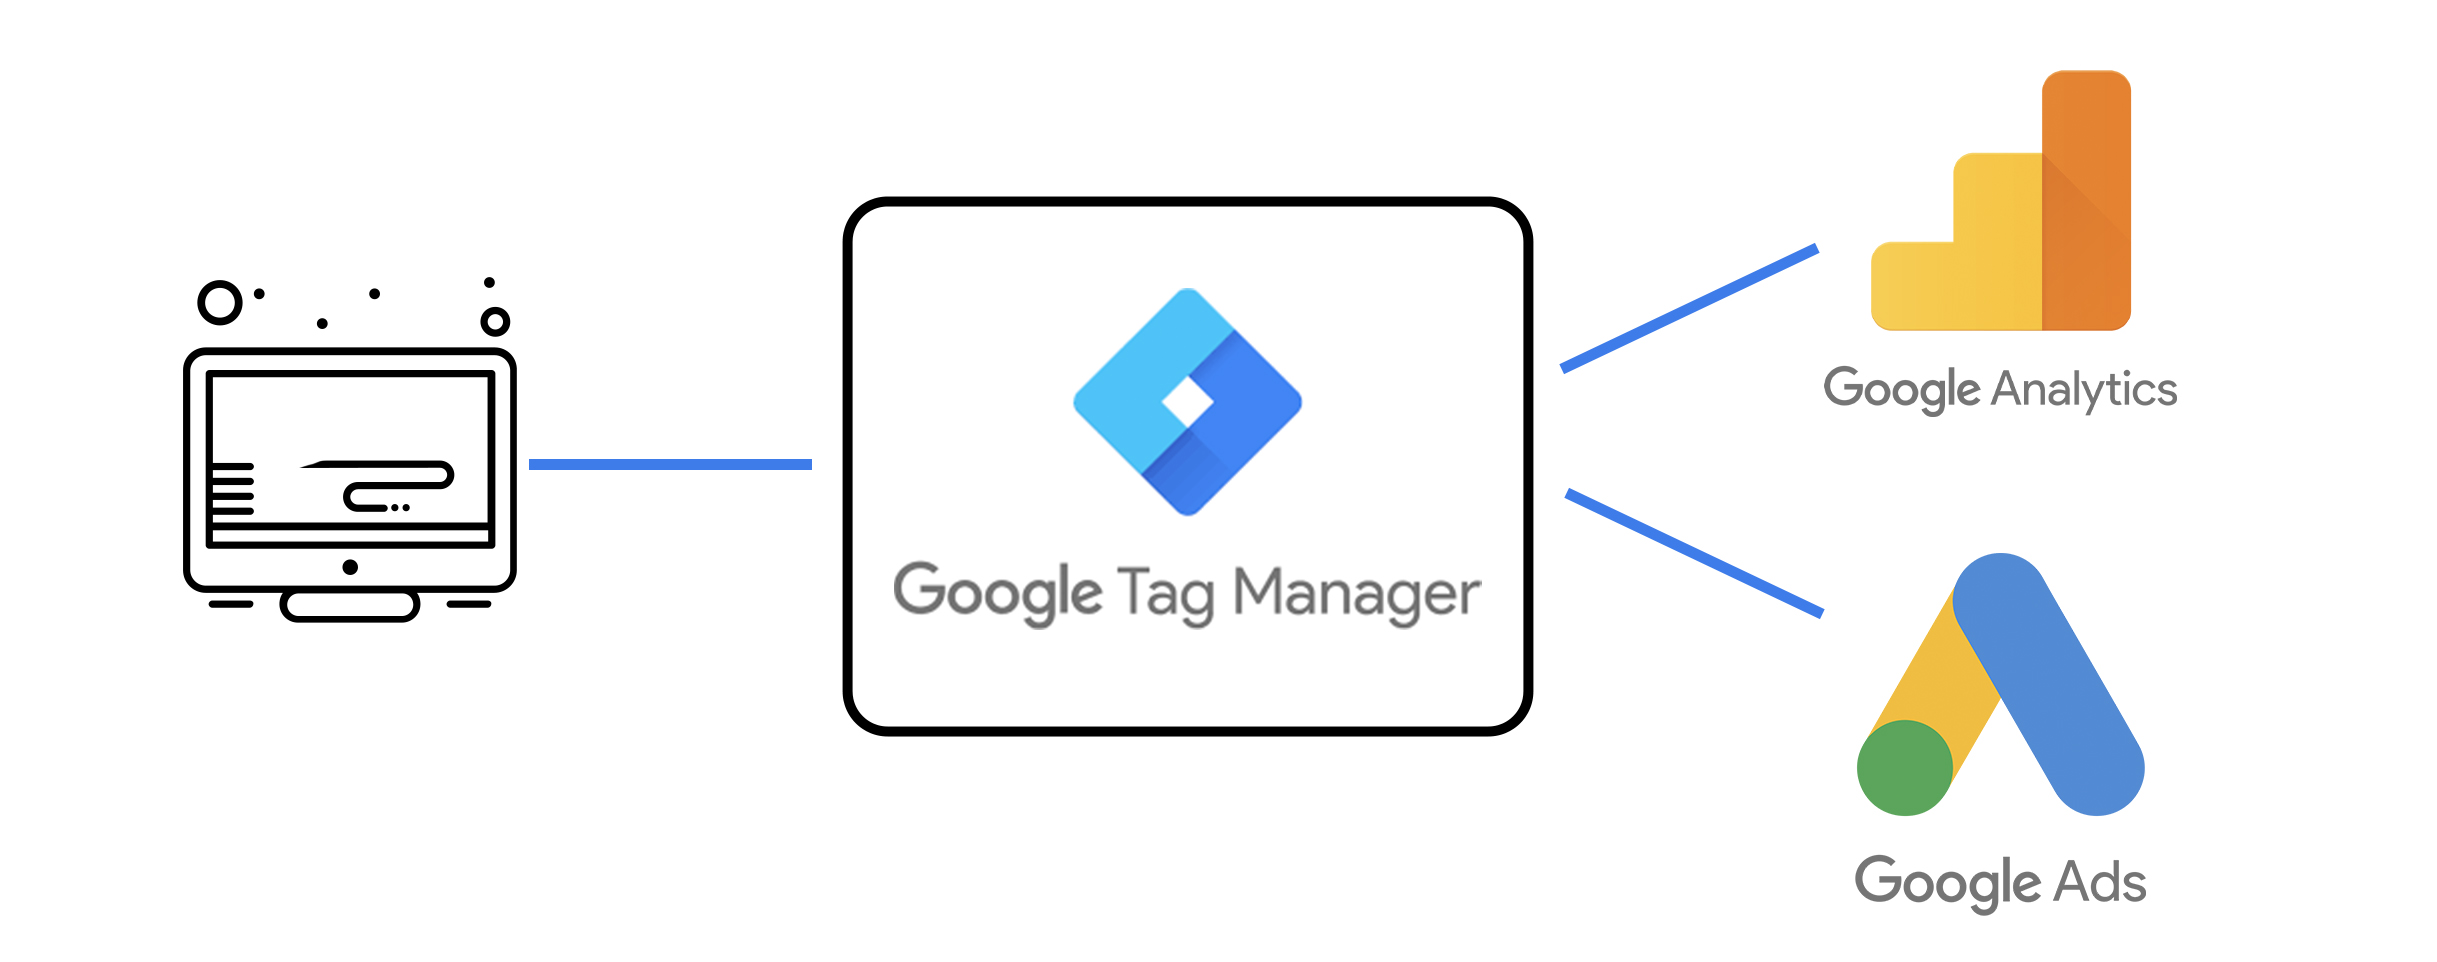 Google Tag Manager och Google Analytics 4 